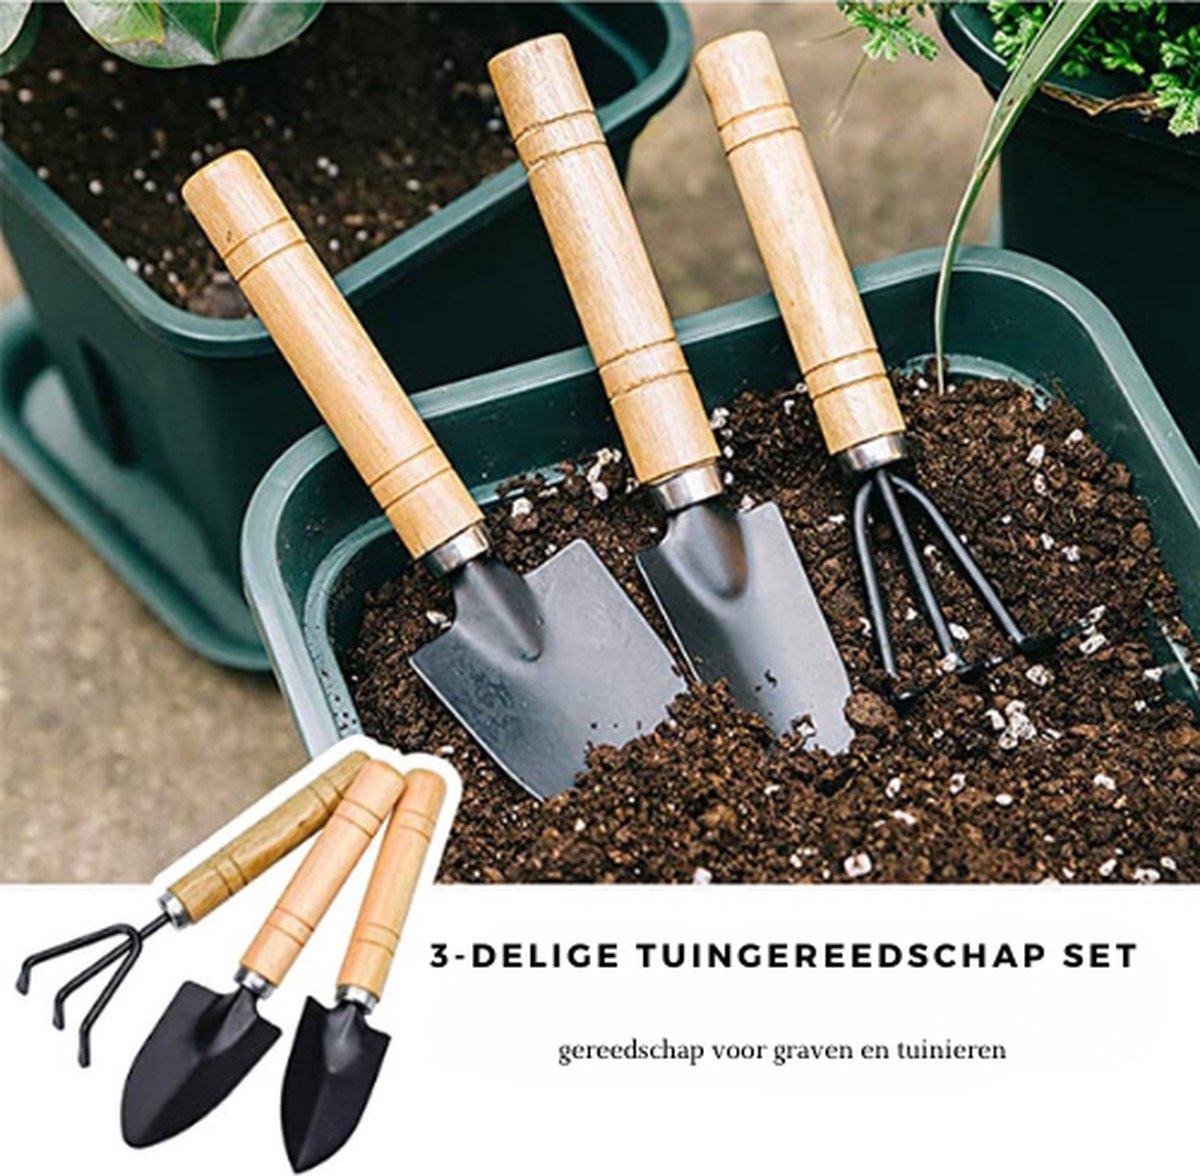 Set de 3 outils à main pour jardin - POLET